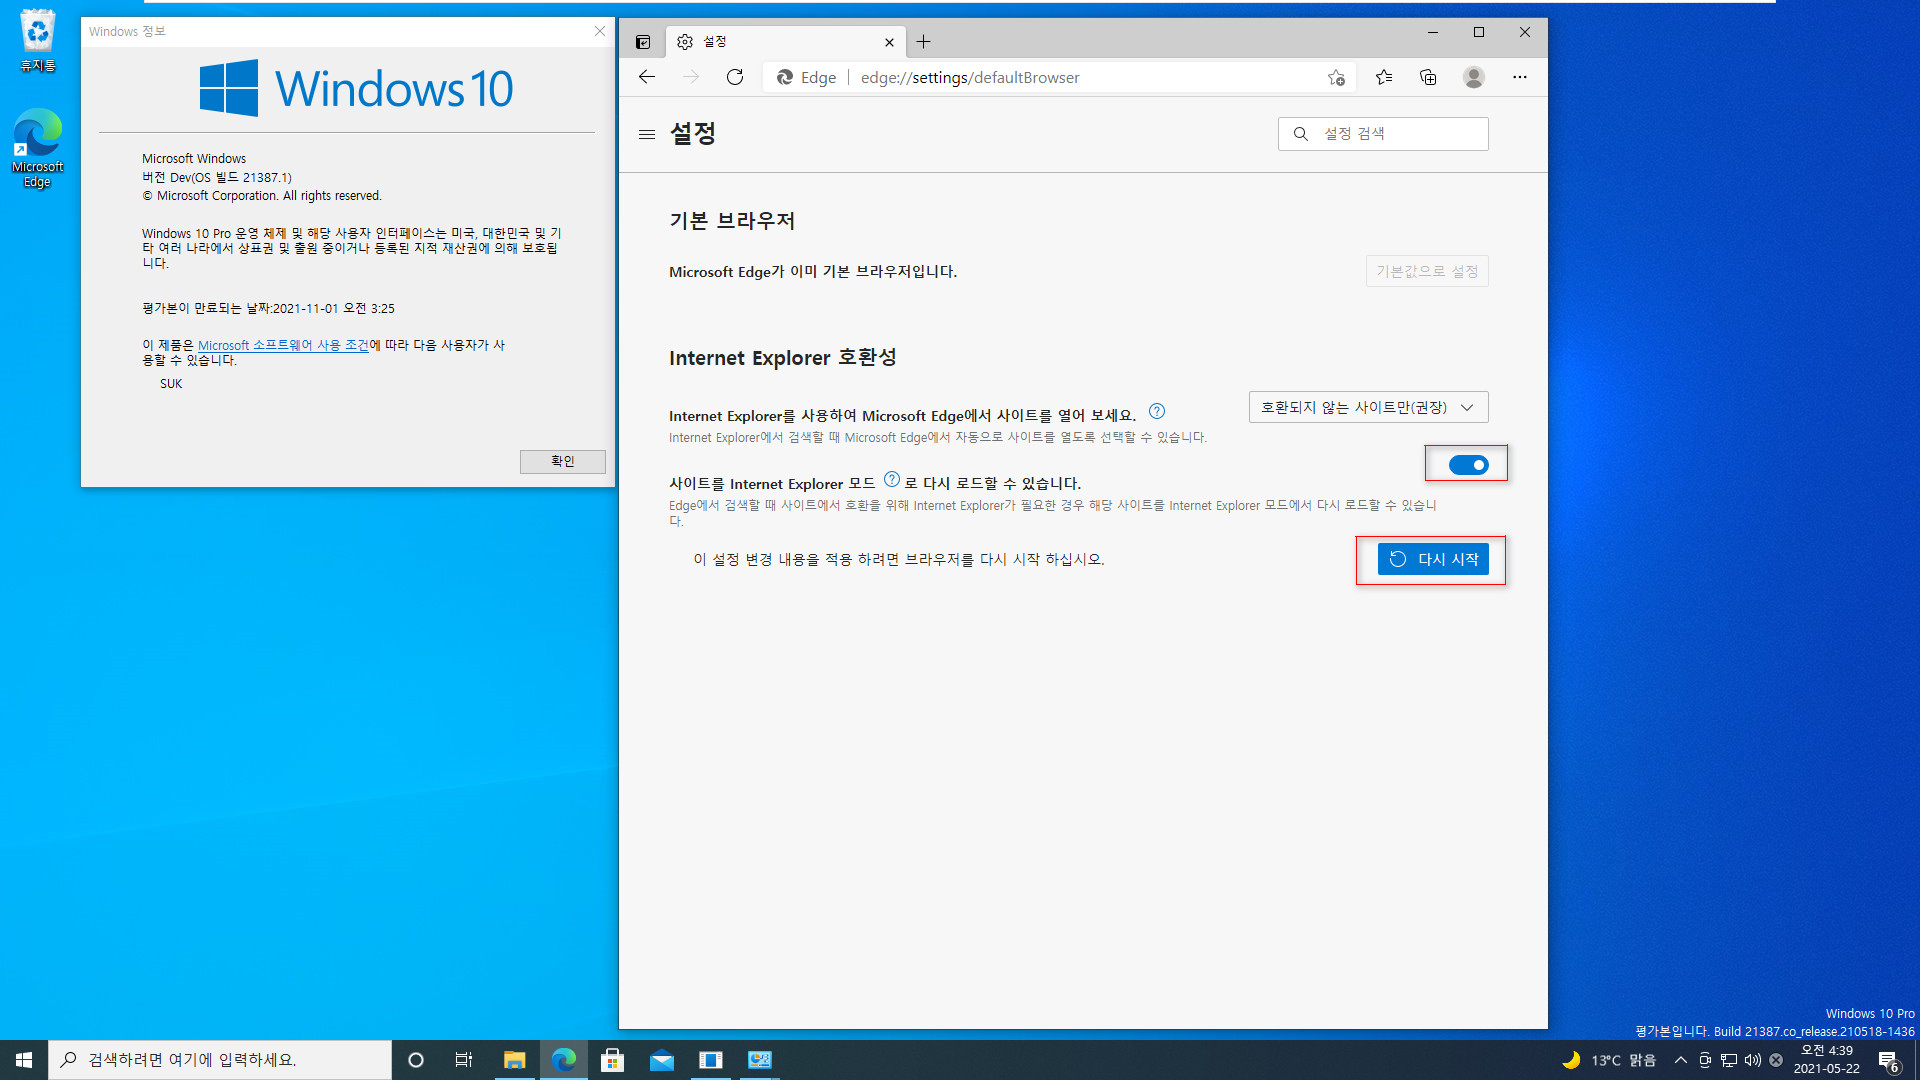 Windows 10 인사이더 프리뷰 - 버전 Dev (버전 21H2 예상) 21387.1 빌드 Pro 설치 테스트 - 21387.1 빌드에서 Internet Explorer (IE)가 제거되었네요. Edge에 IE모드 사용하면 되네요 2021-05-22_043909.jpg